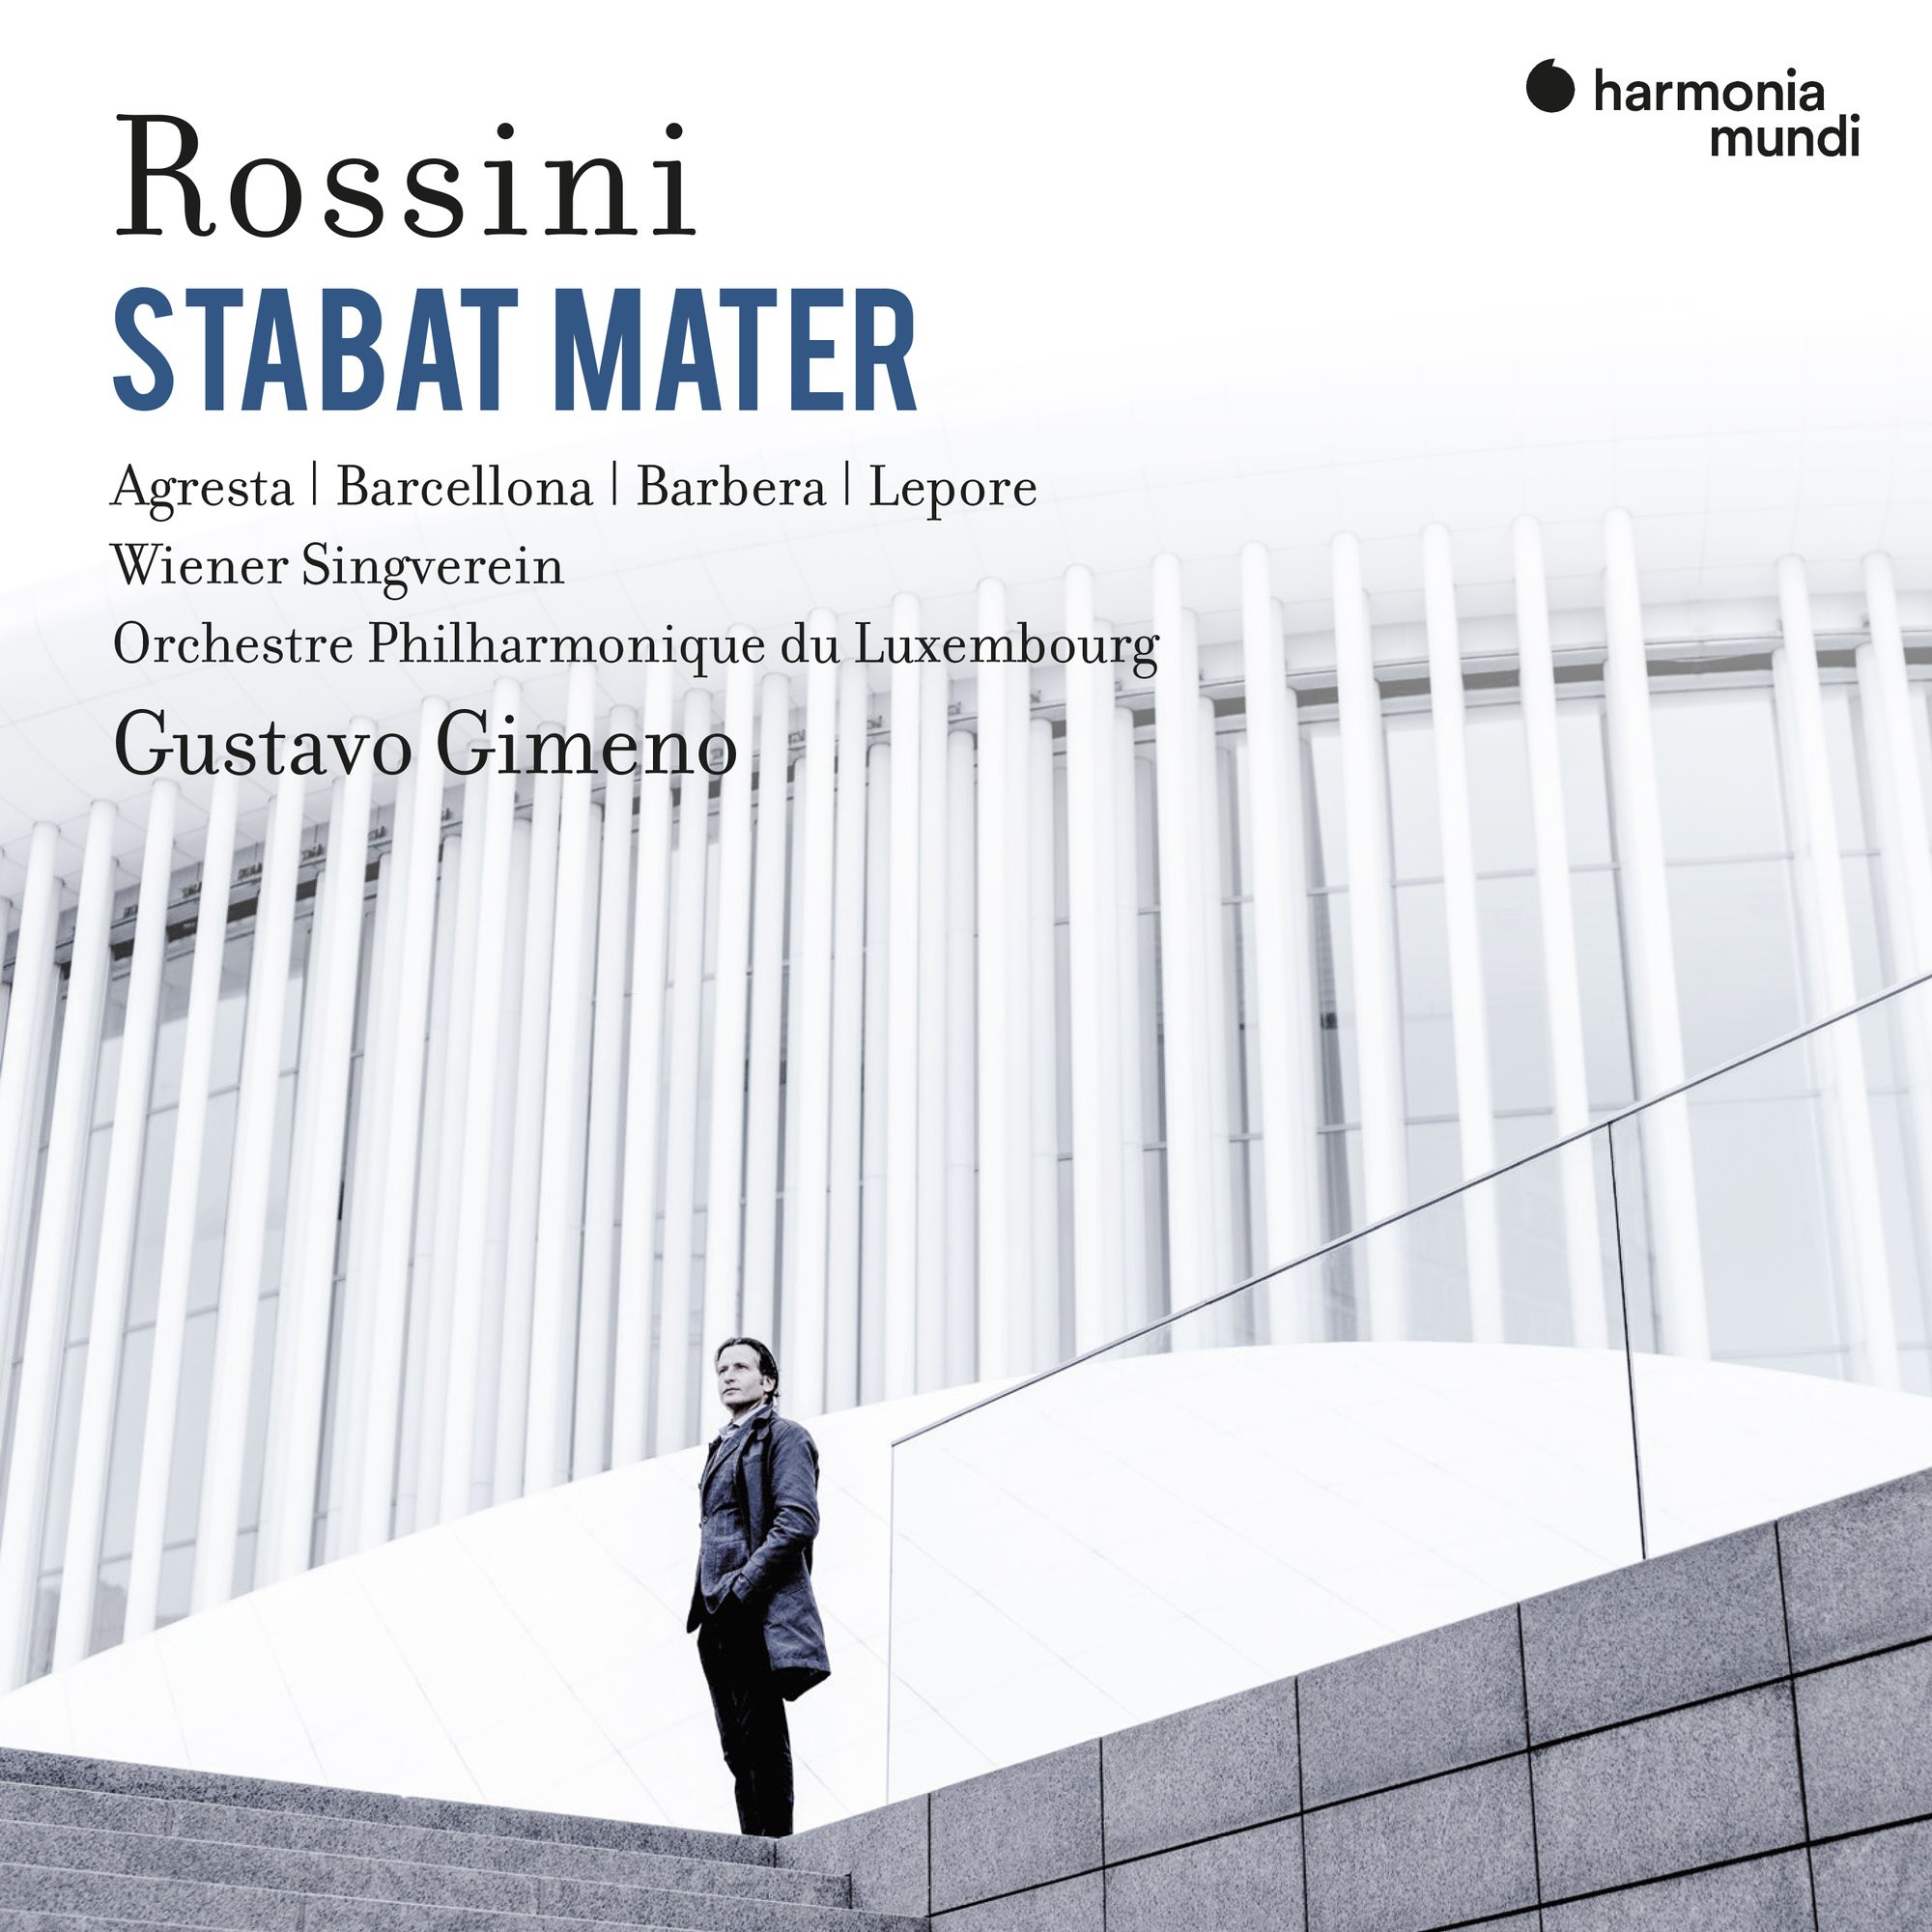 Rossini's Stabat Mater